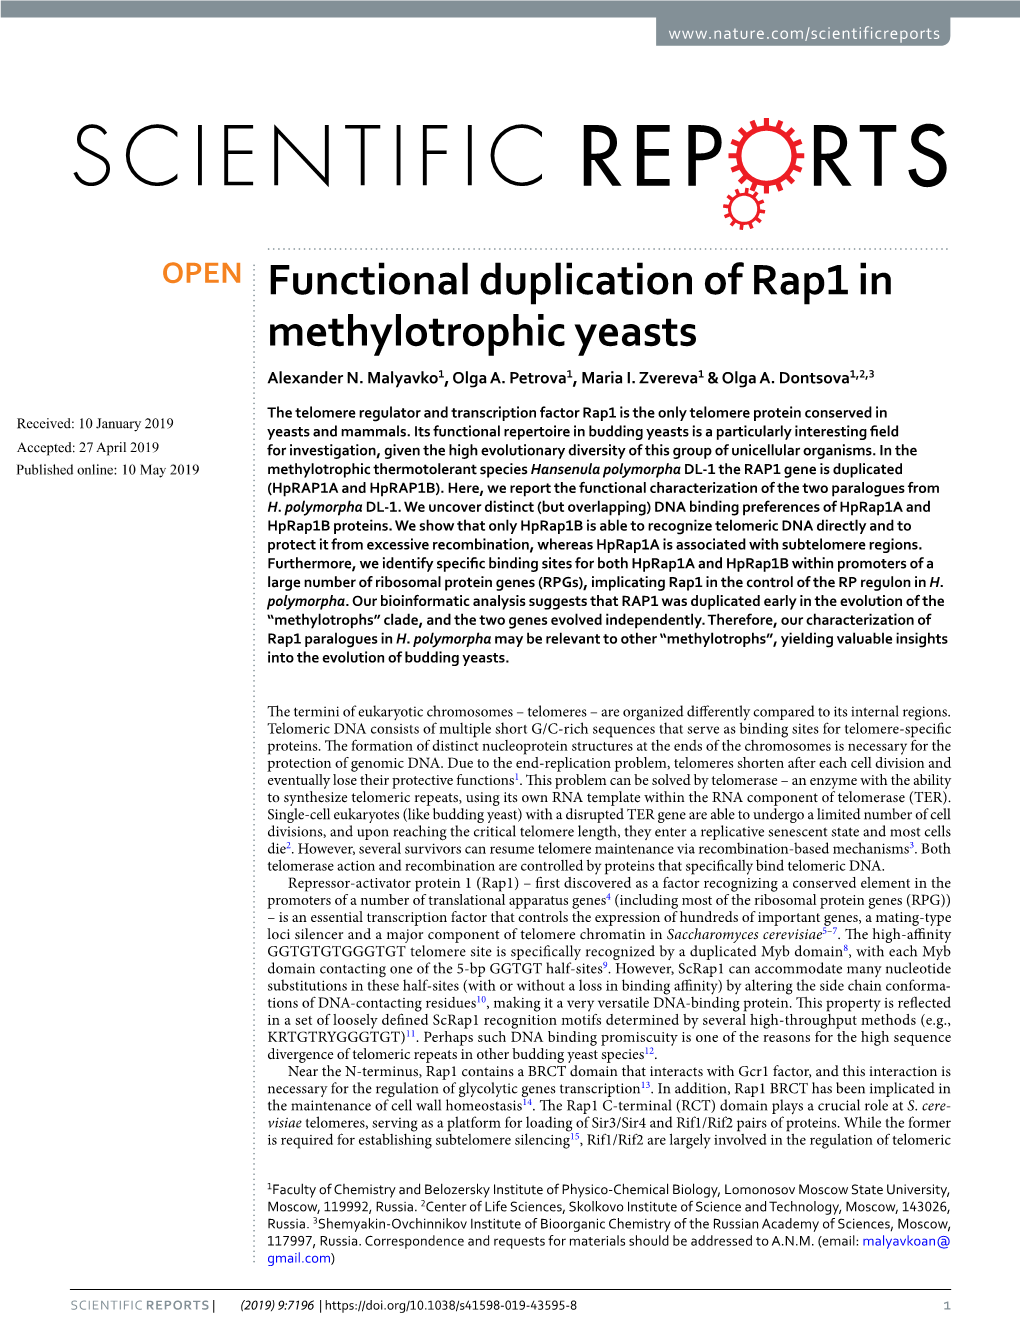 Functional Duplication of Rap1 in Methylotrophic Yeasts Alexander N